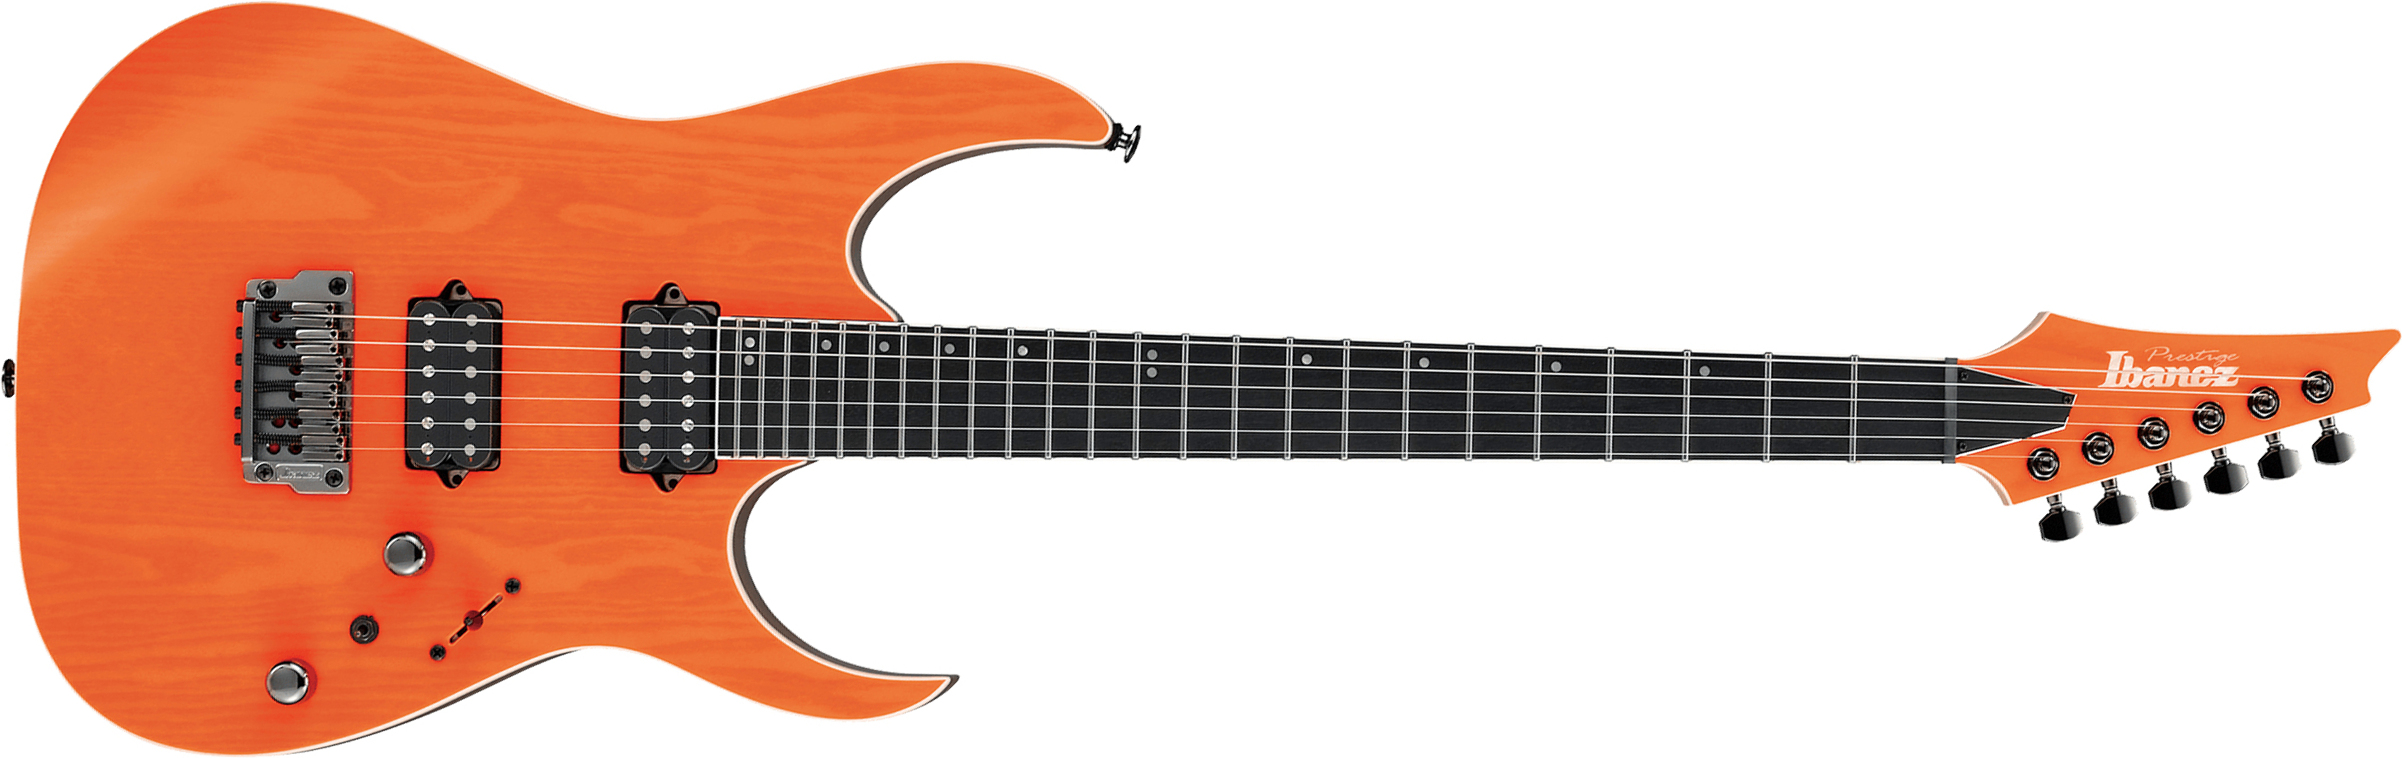 Ibanez Rgr5221 Tfr Prestige Jap Ht Bare Knuckle Hh Eb - Transparent Fluorescent Orange - Guitarra eléctrica con forma de str. - Main picture